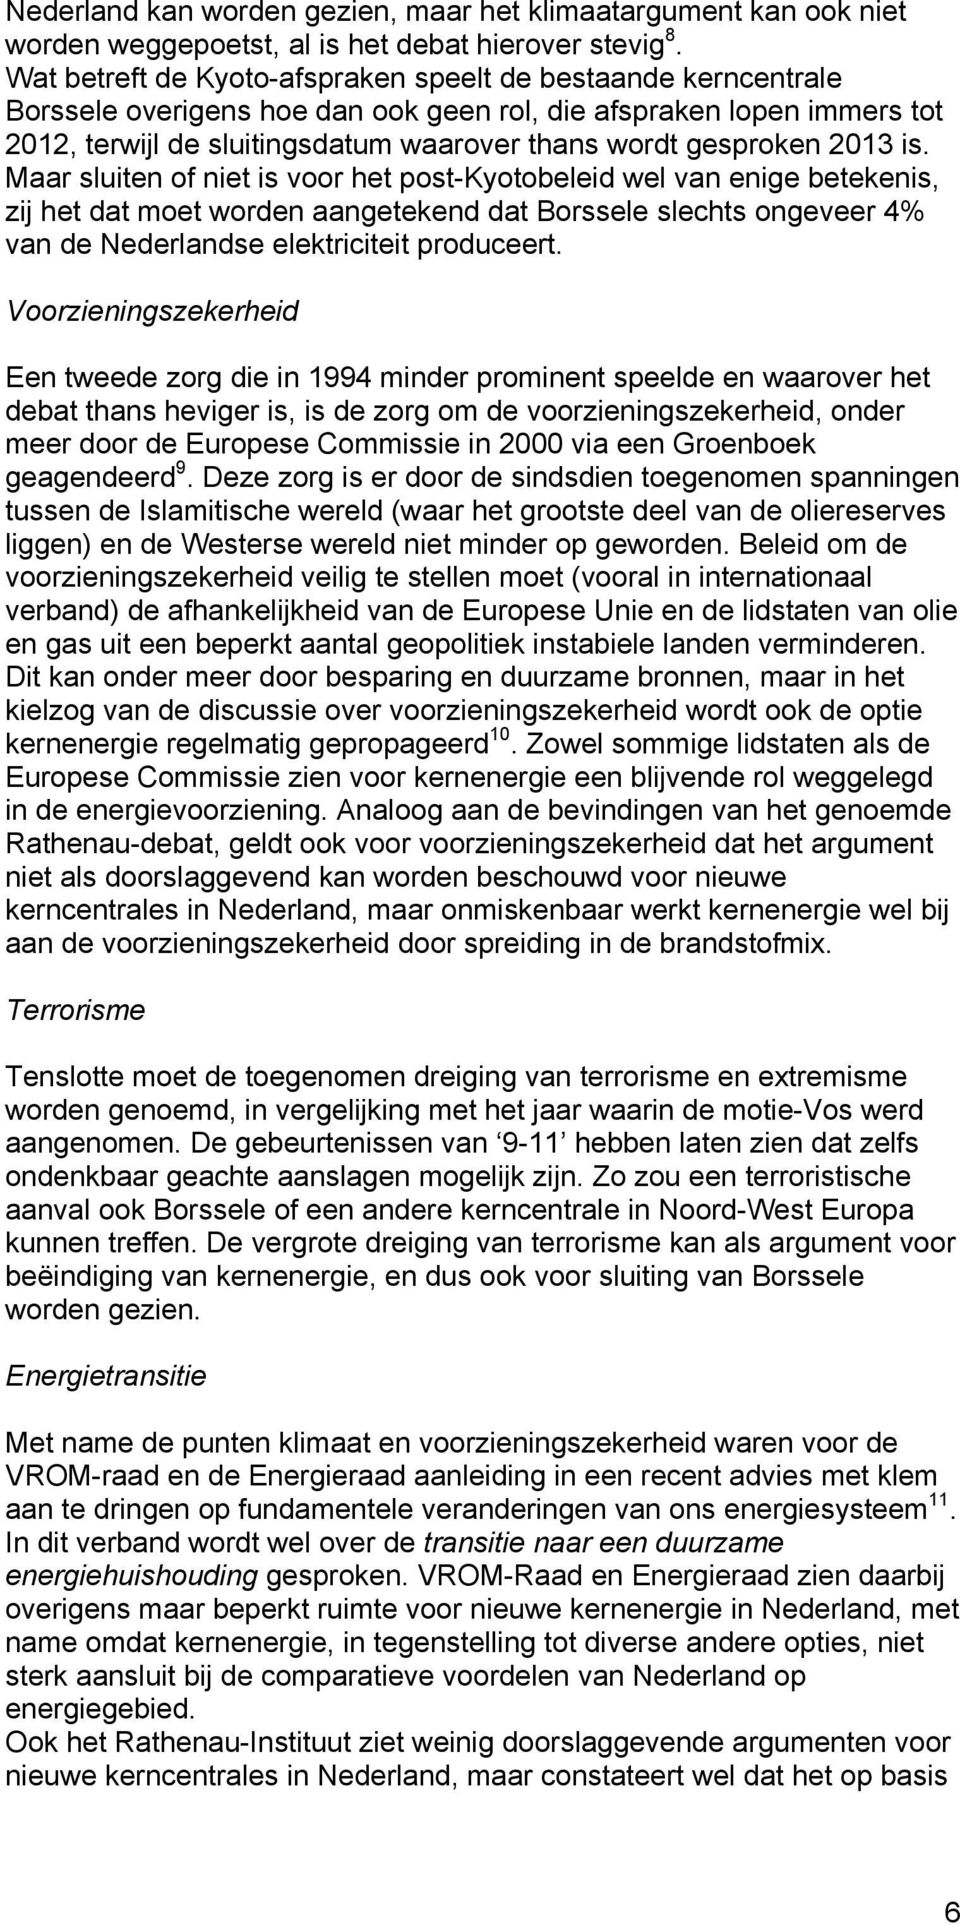 2013 is. Maar sluiten of niet is voor het post-kyotobeleid wel van enige betekenis, zij het dat moet worden aangetekend dat Borssele slechts ongeveer 4% van de Nederlandse elektriciteit produceert.